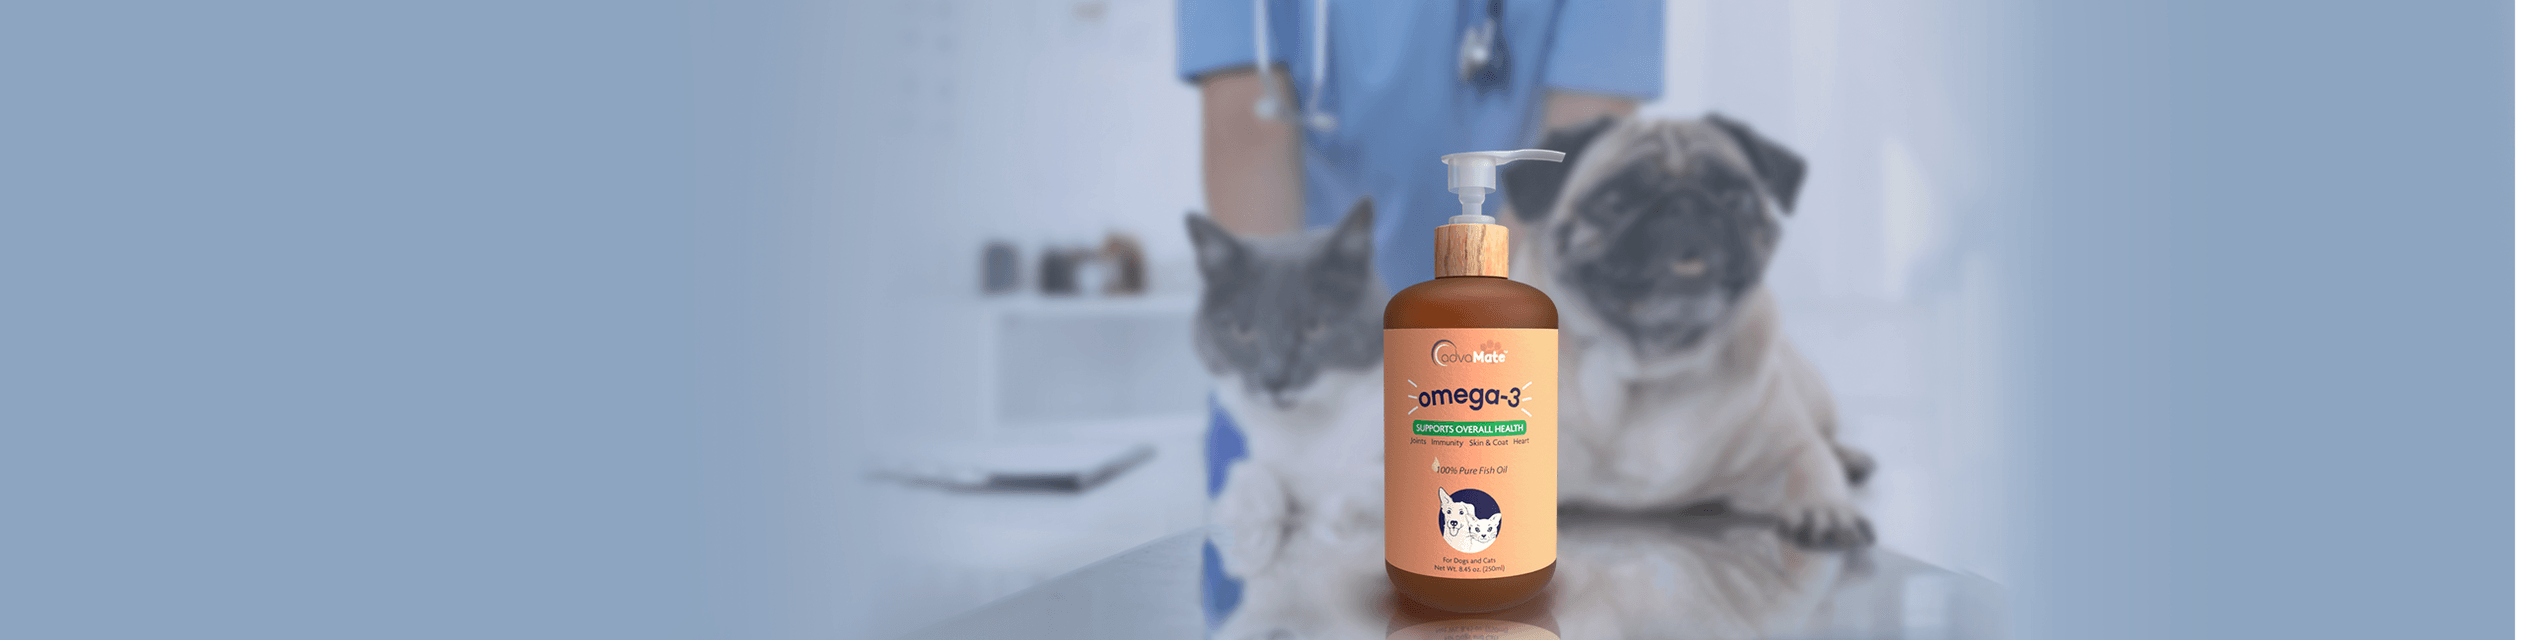 Suplemento de omega 3 para perros y gatos.